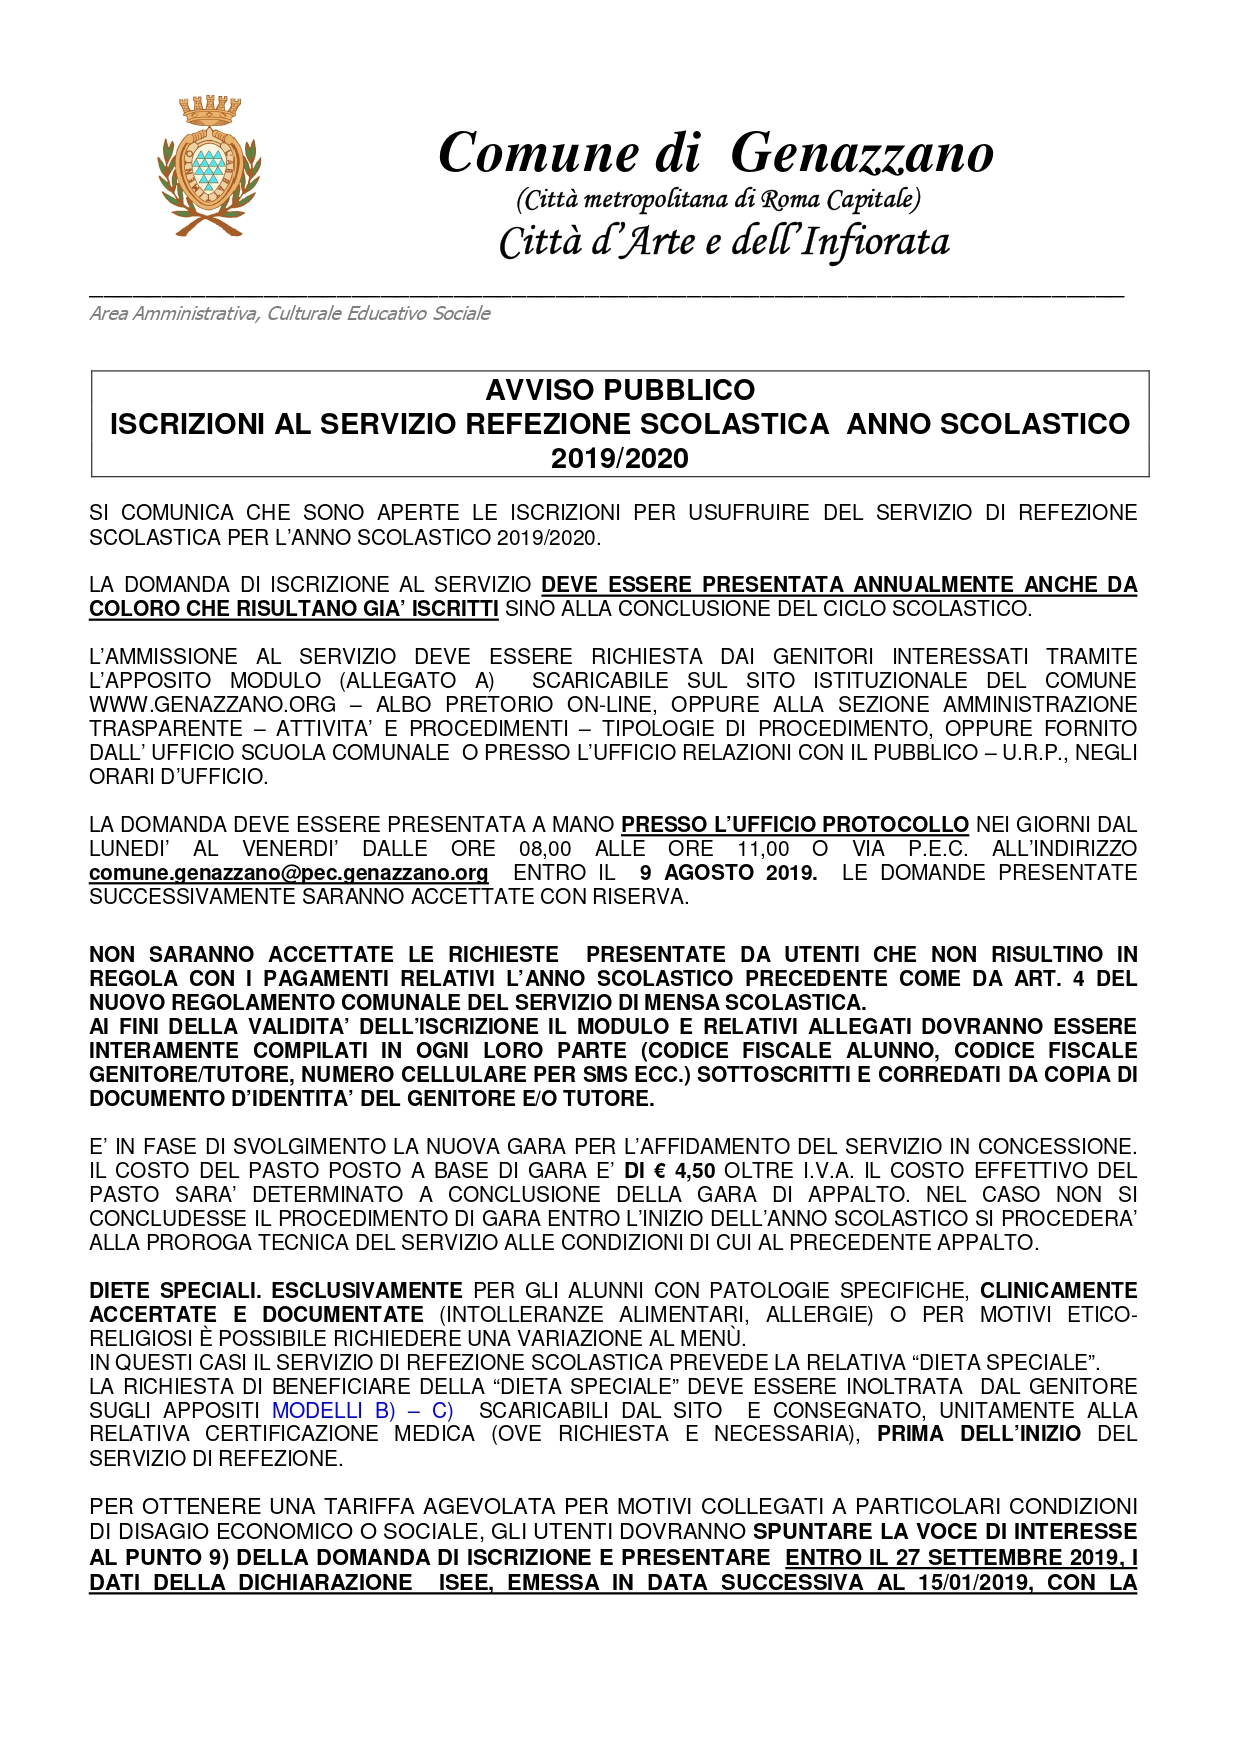 class Can't read or write concert ISCRIZIONE SERVIZIO REFEZIONE SCOLASTICA A.S. 2019/2020 - Comune di  Genazzano